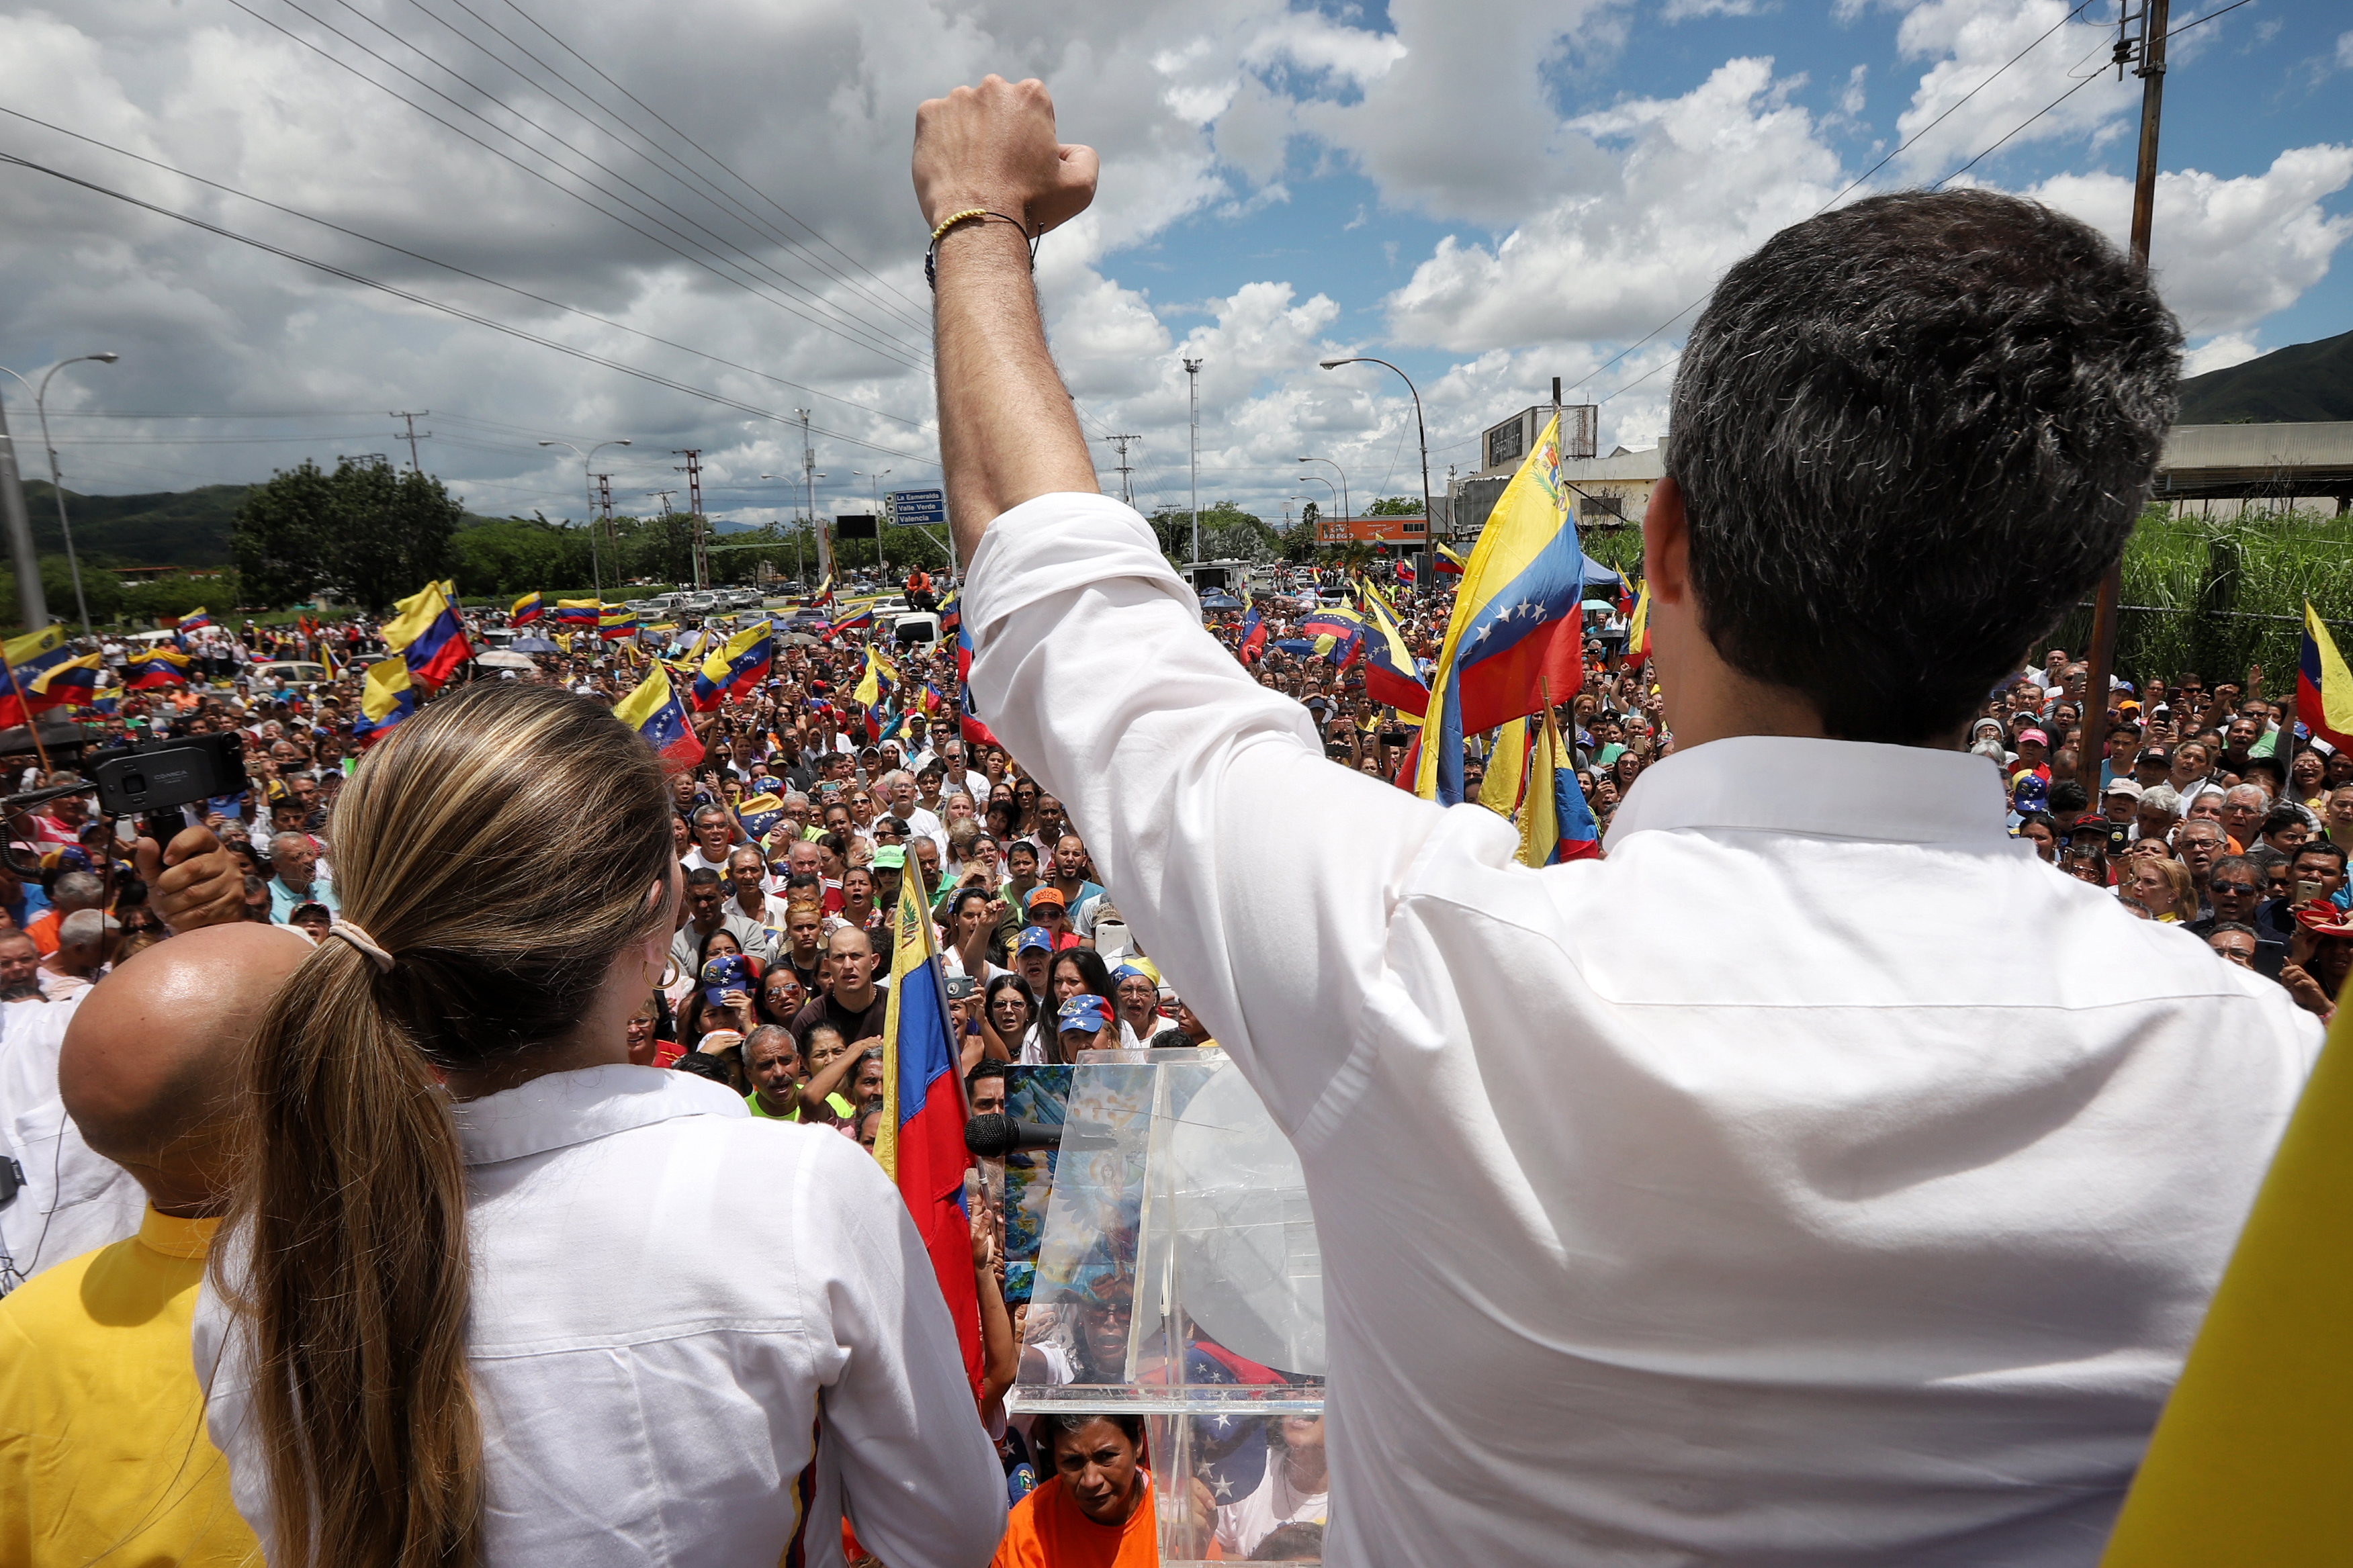 EN FOTOS: El recorrido de Guaidó en Valencia este #24Ago